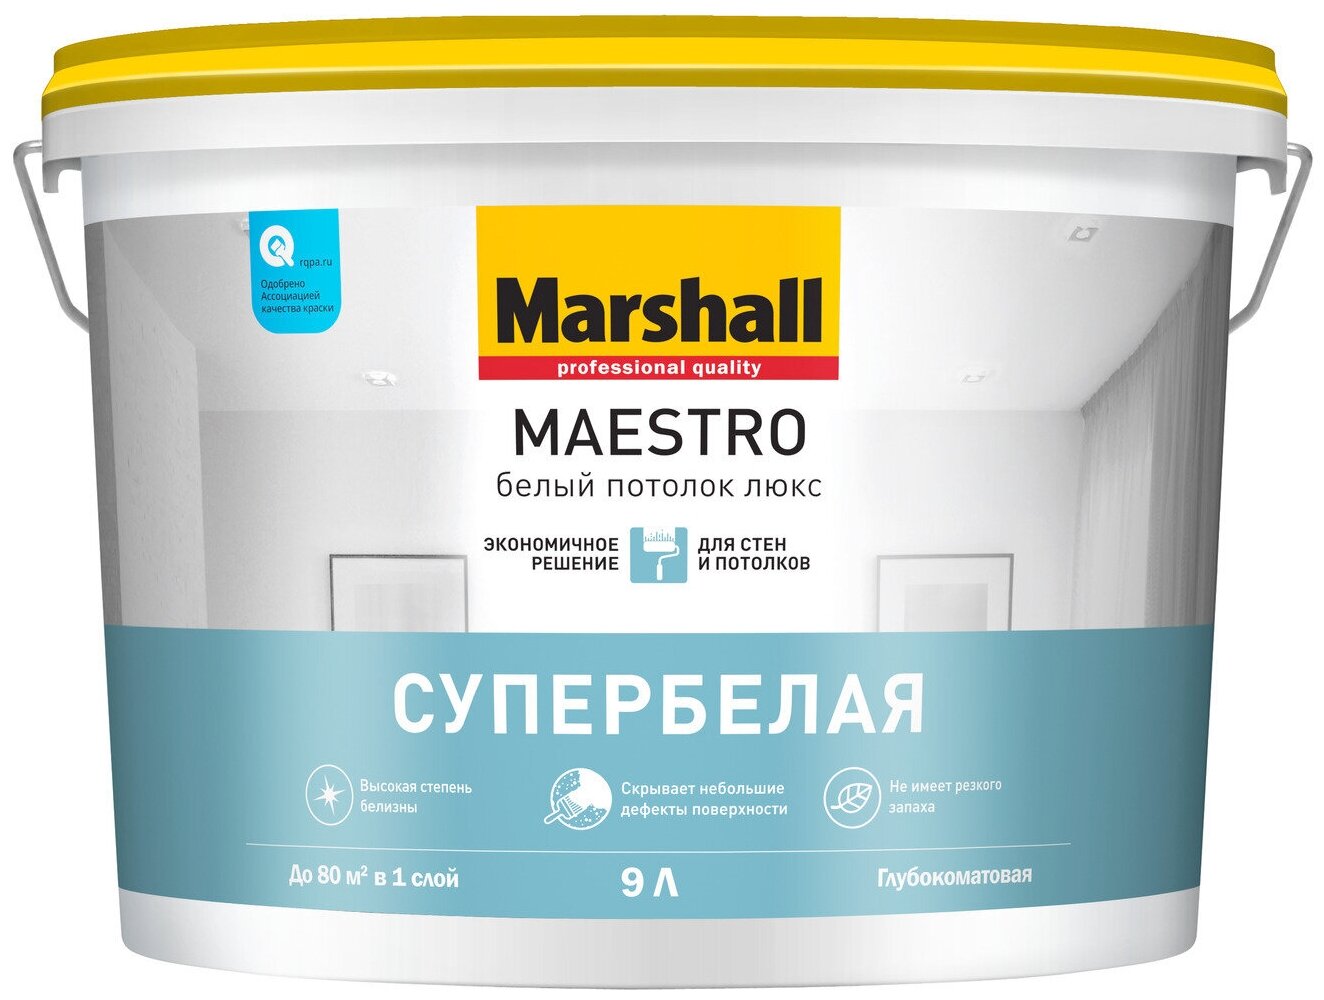 Краска для потолка водно-дисперсионная Marshall Maestro Белый Потолок Люкс глубокоматовая белая 9 л.